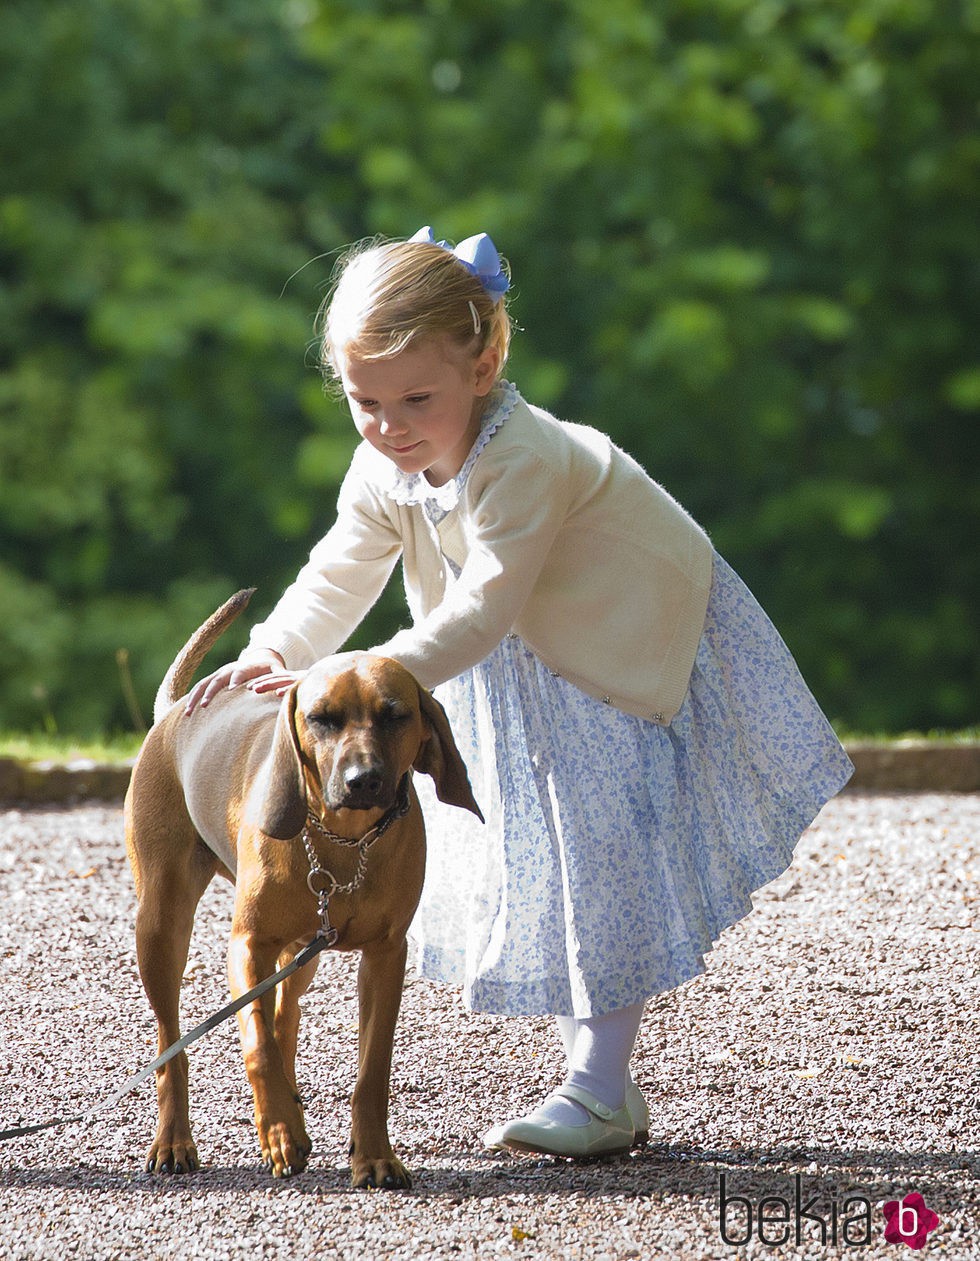 Estela de Suecia jugando con un perro en el 38 cumpleaños de Victoria de Suecia